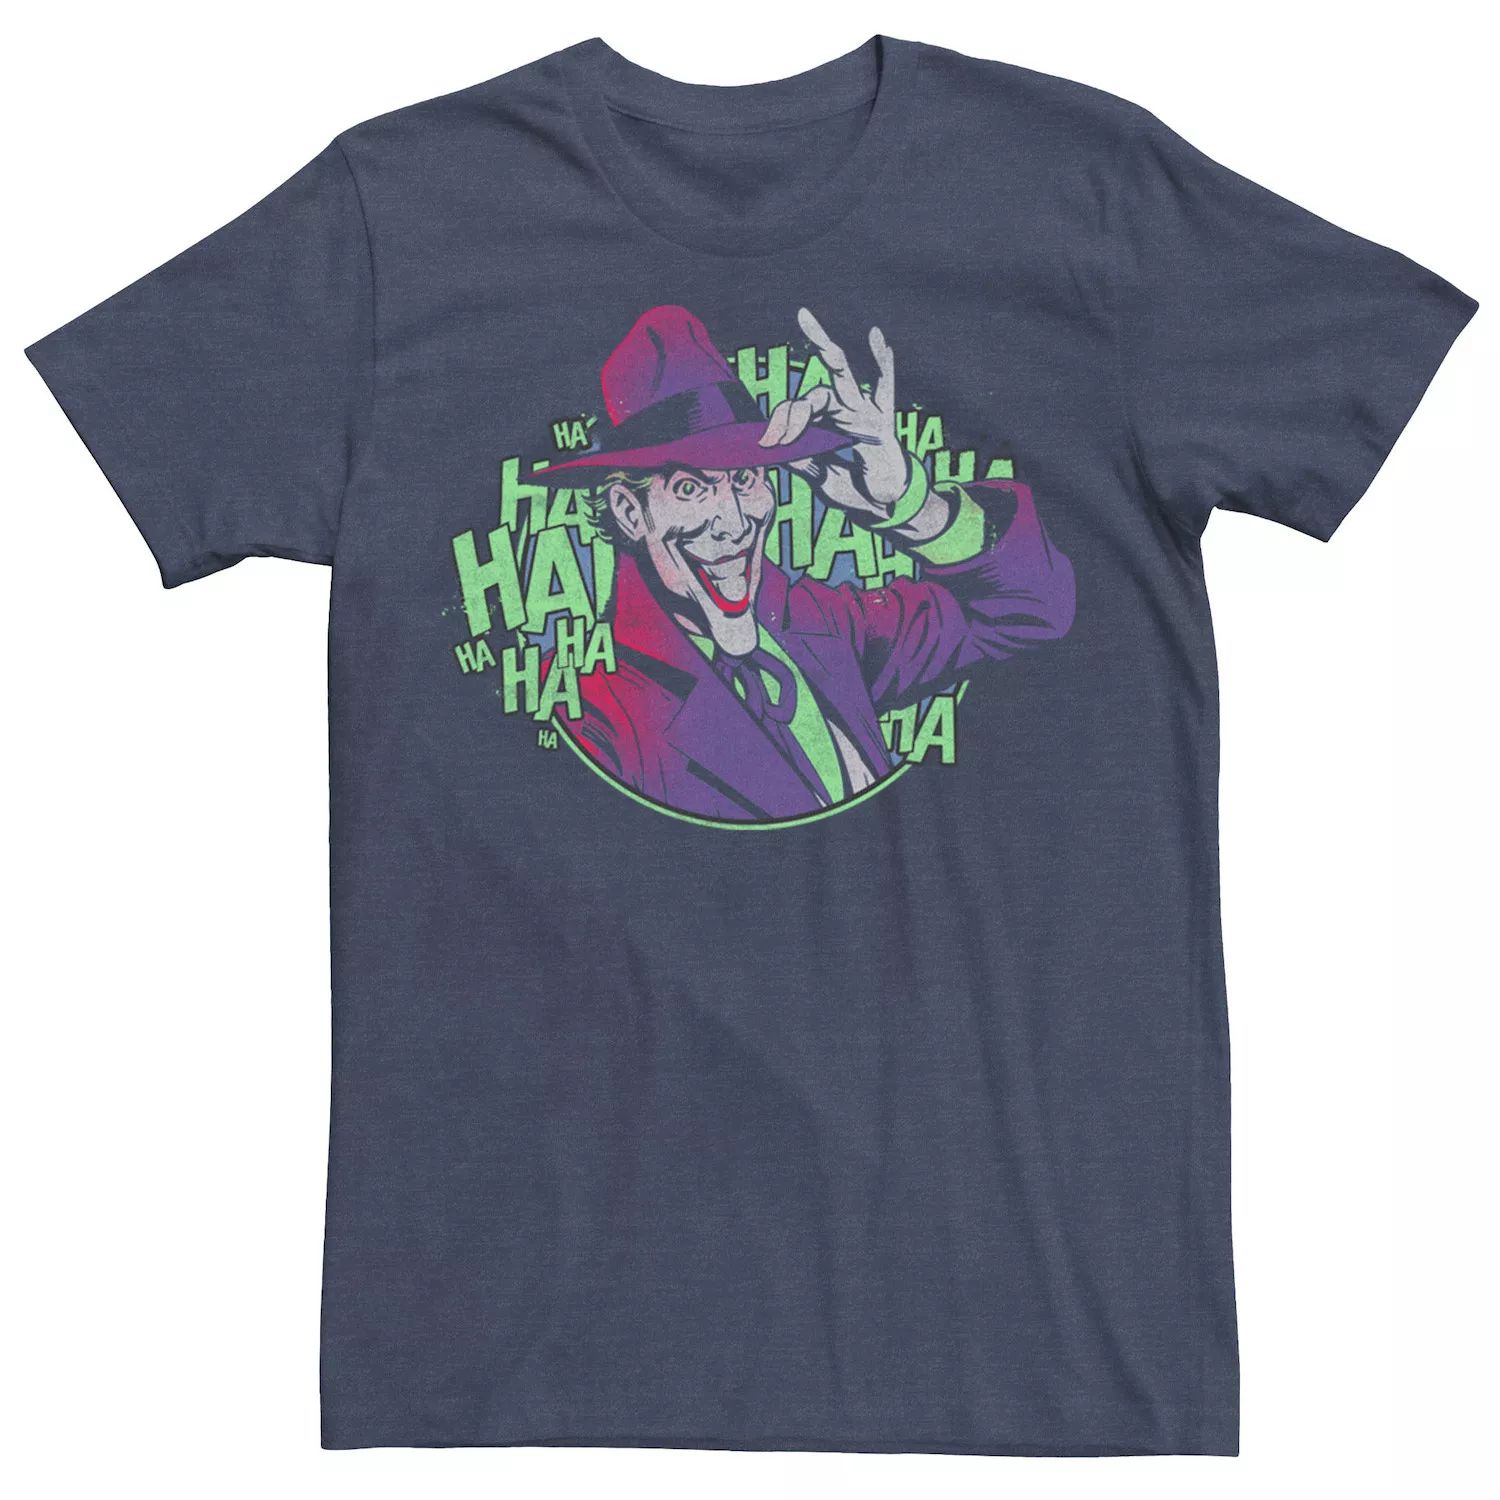 Мужская футболка Batman The Jokers Hat DC Comics johns g batman three jokers